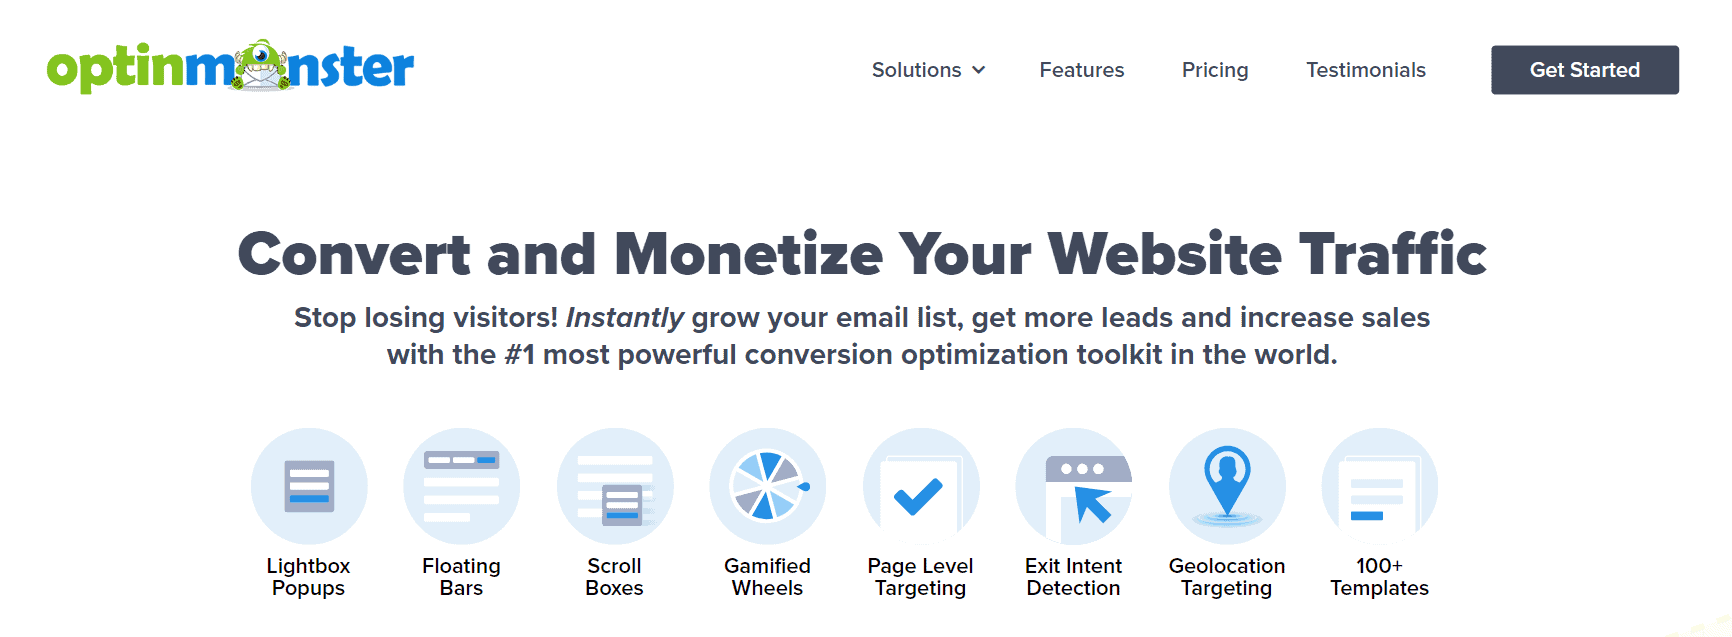 OptinMonster Landing Page